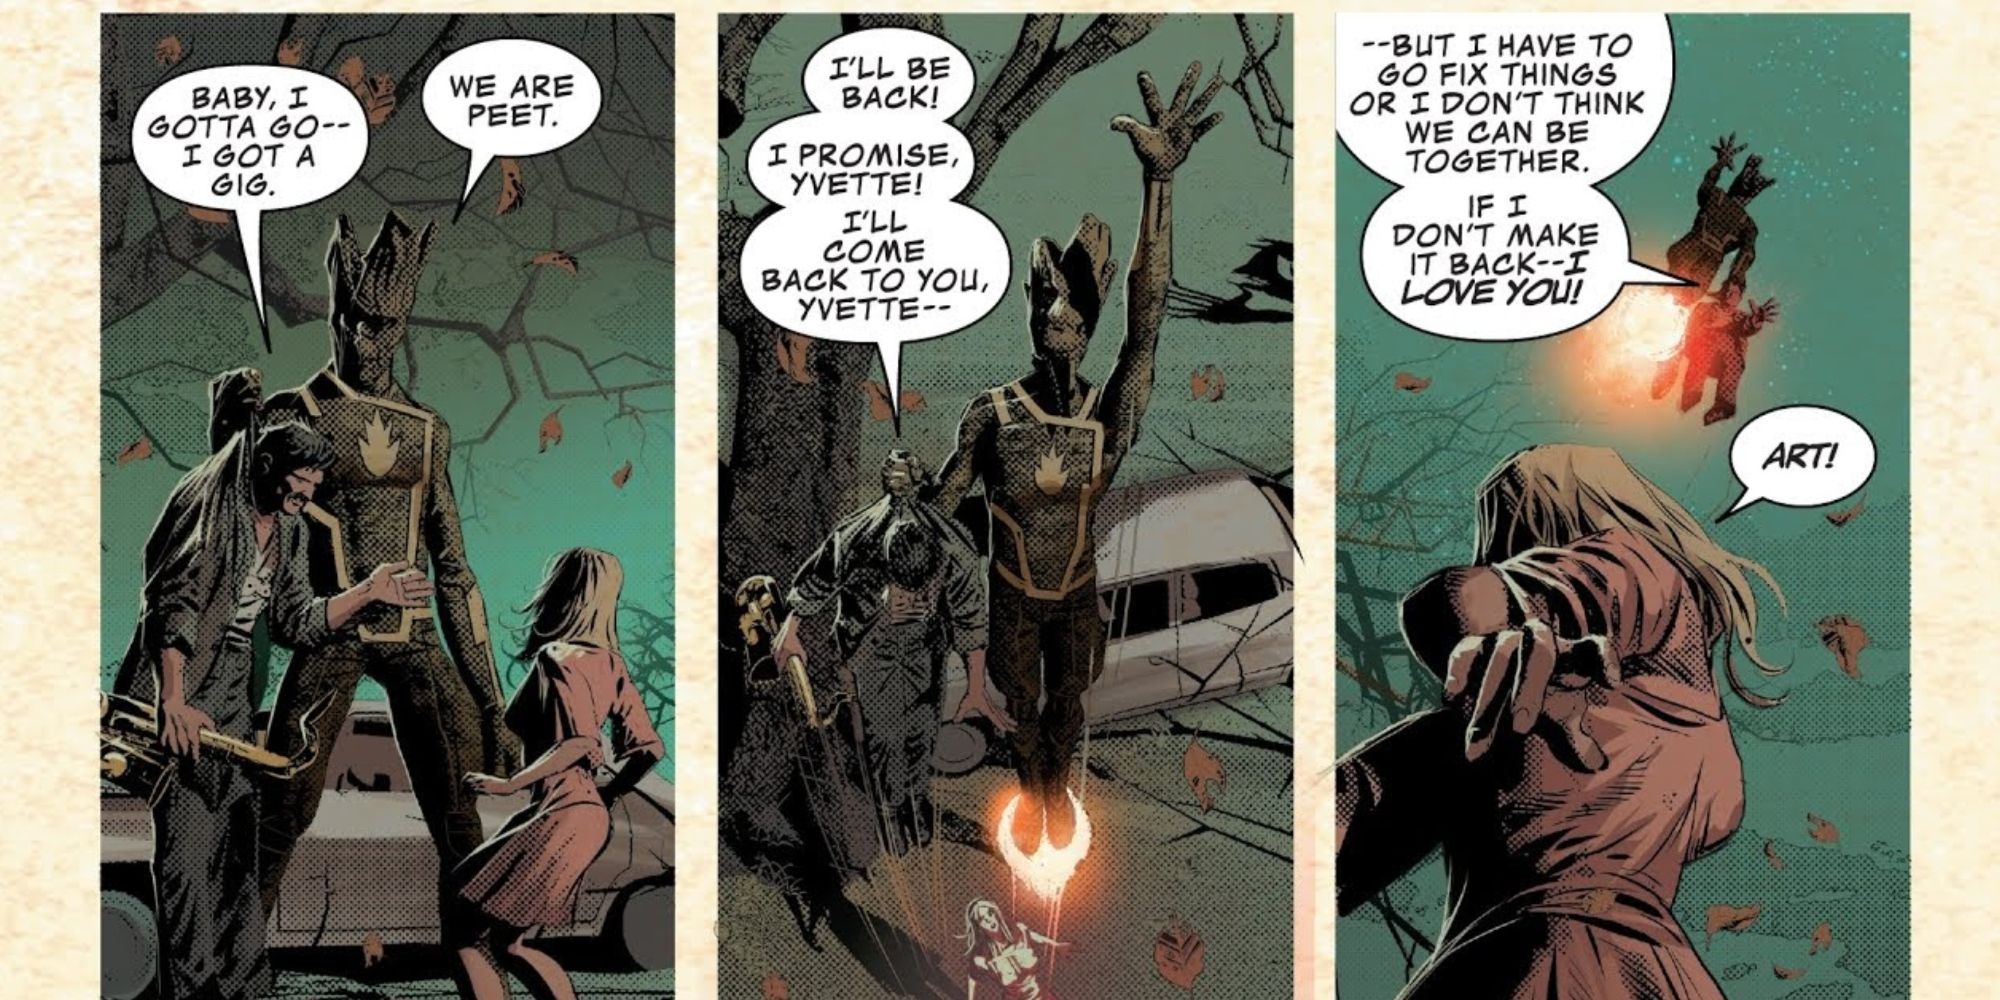 Peet reveals himself in Infinity Wars #5.